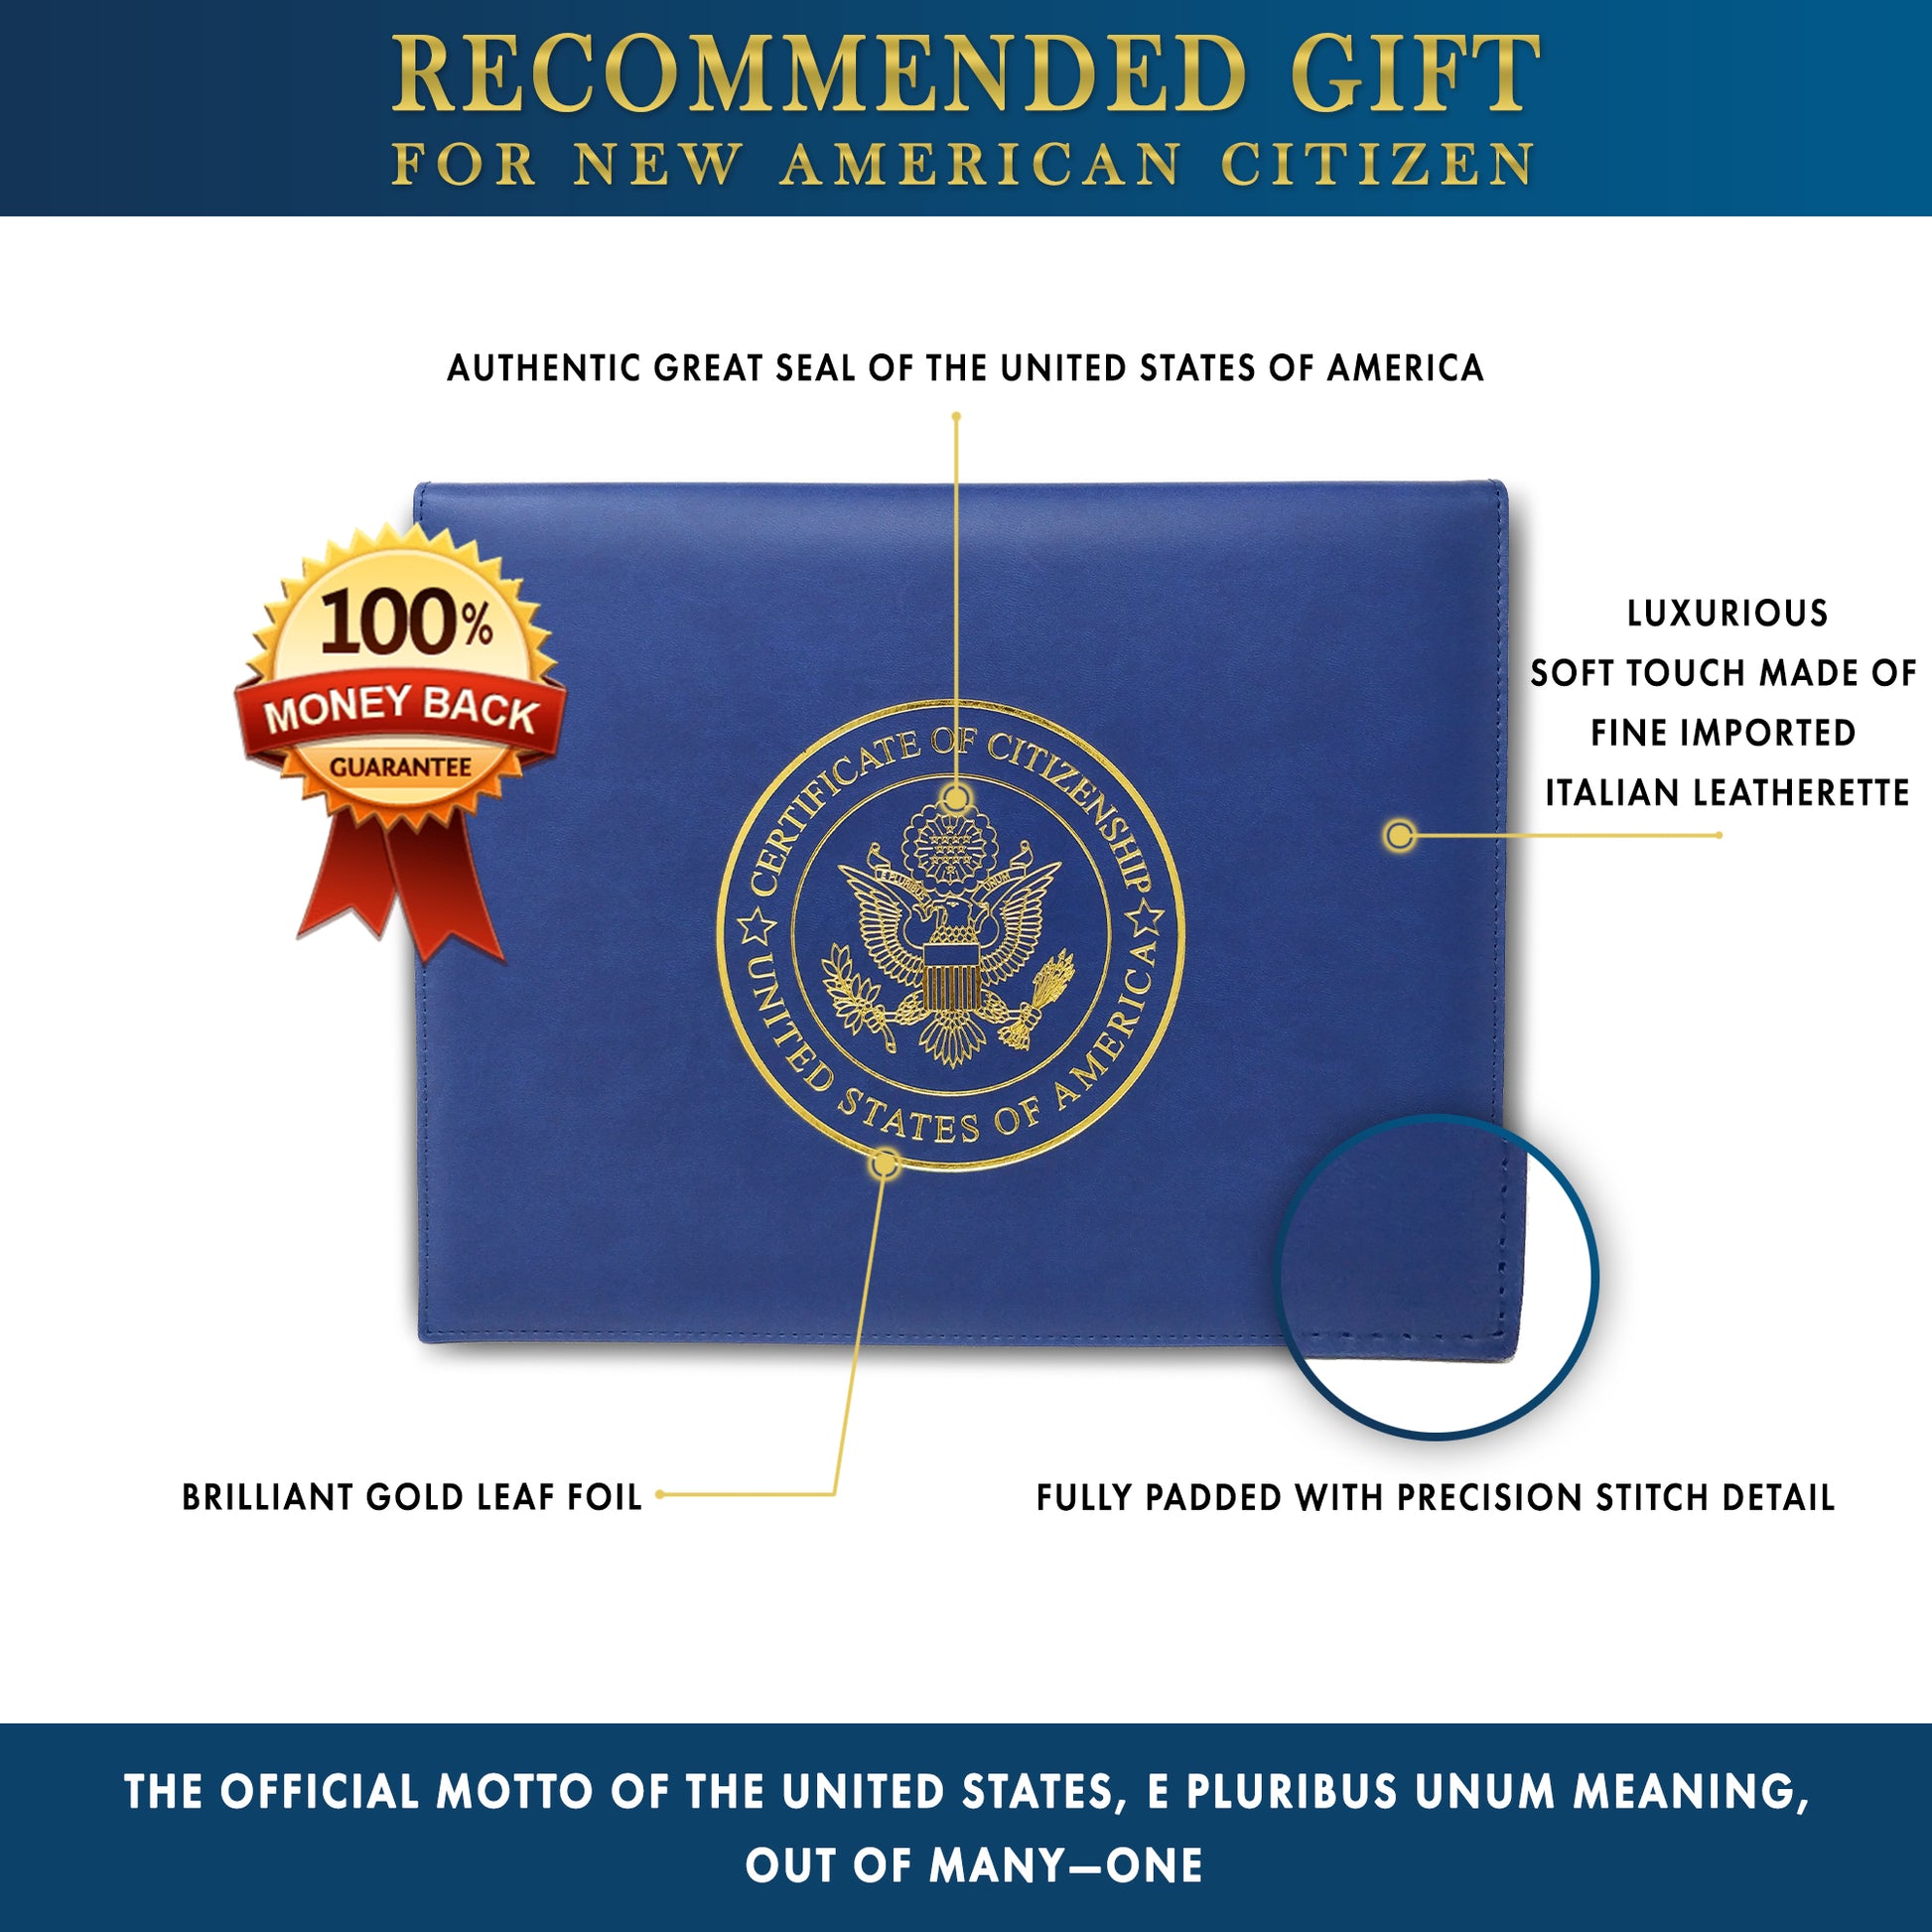 US Certificate of Citizenship Holder Naturalization - Official Fellow Citizen